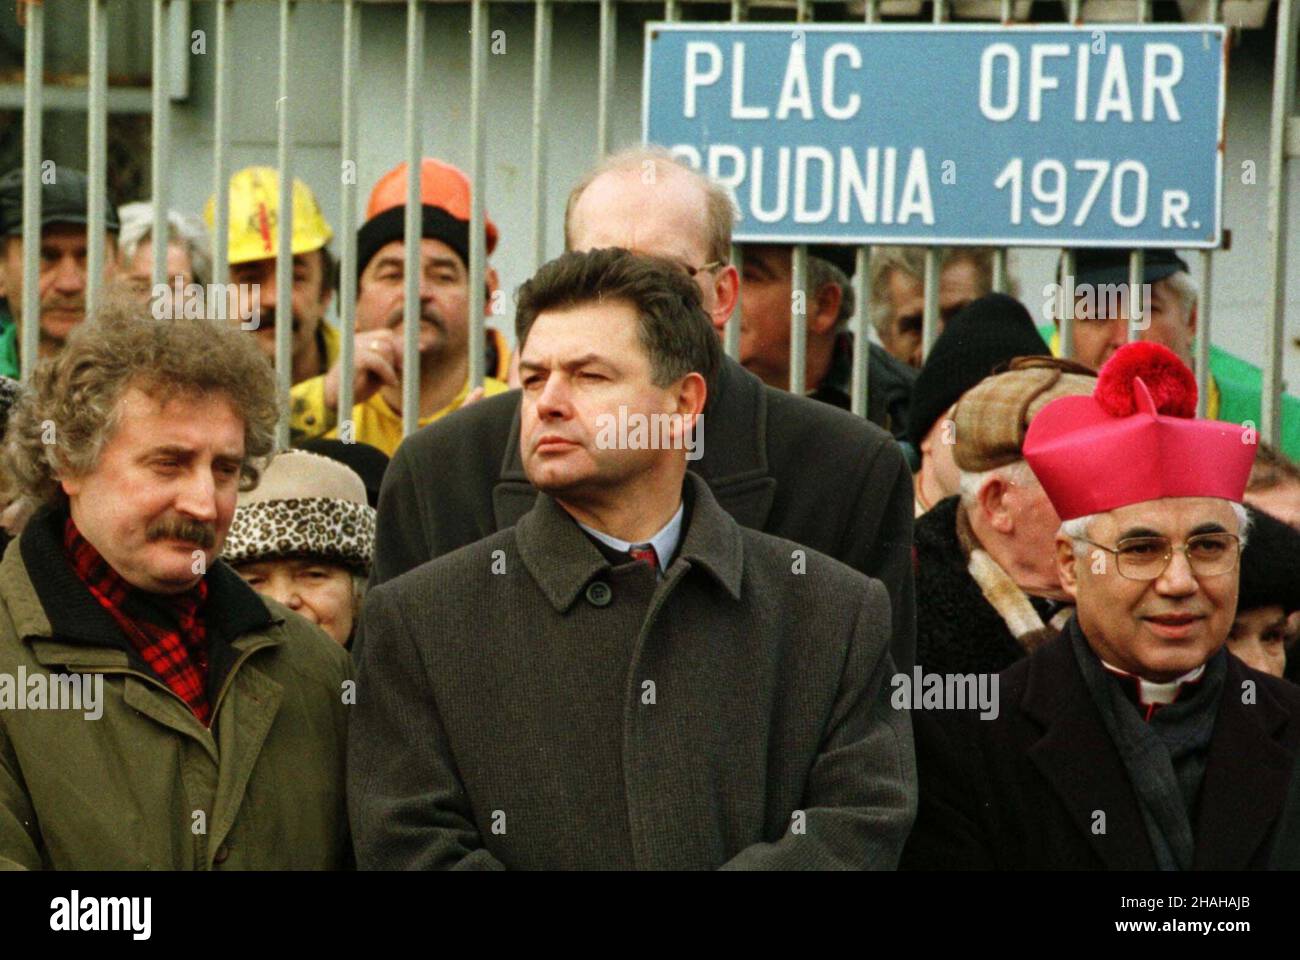 Szczecin, 17.12.1999. 29. rocznica Szczeciñskiego Grudnia 1970. N/z Marian Krzaklewski (C) i Longin Komo³owski (L). (mr) PAP/Jerzy Undro     Szczecin, 17.12.1999. 29th anniversary of Polish 1970 protests. Pictured: Marian Krzaklewski (C) and Longin Komolowski (L). (mr) PAP/Jerzy Undro Stock Photo